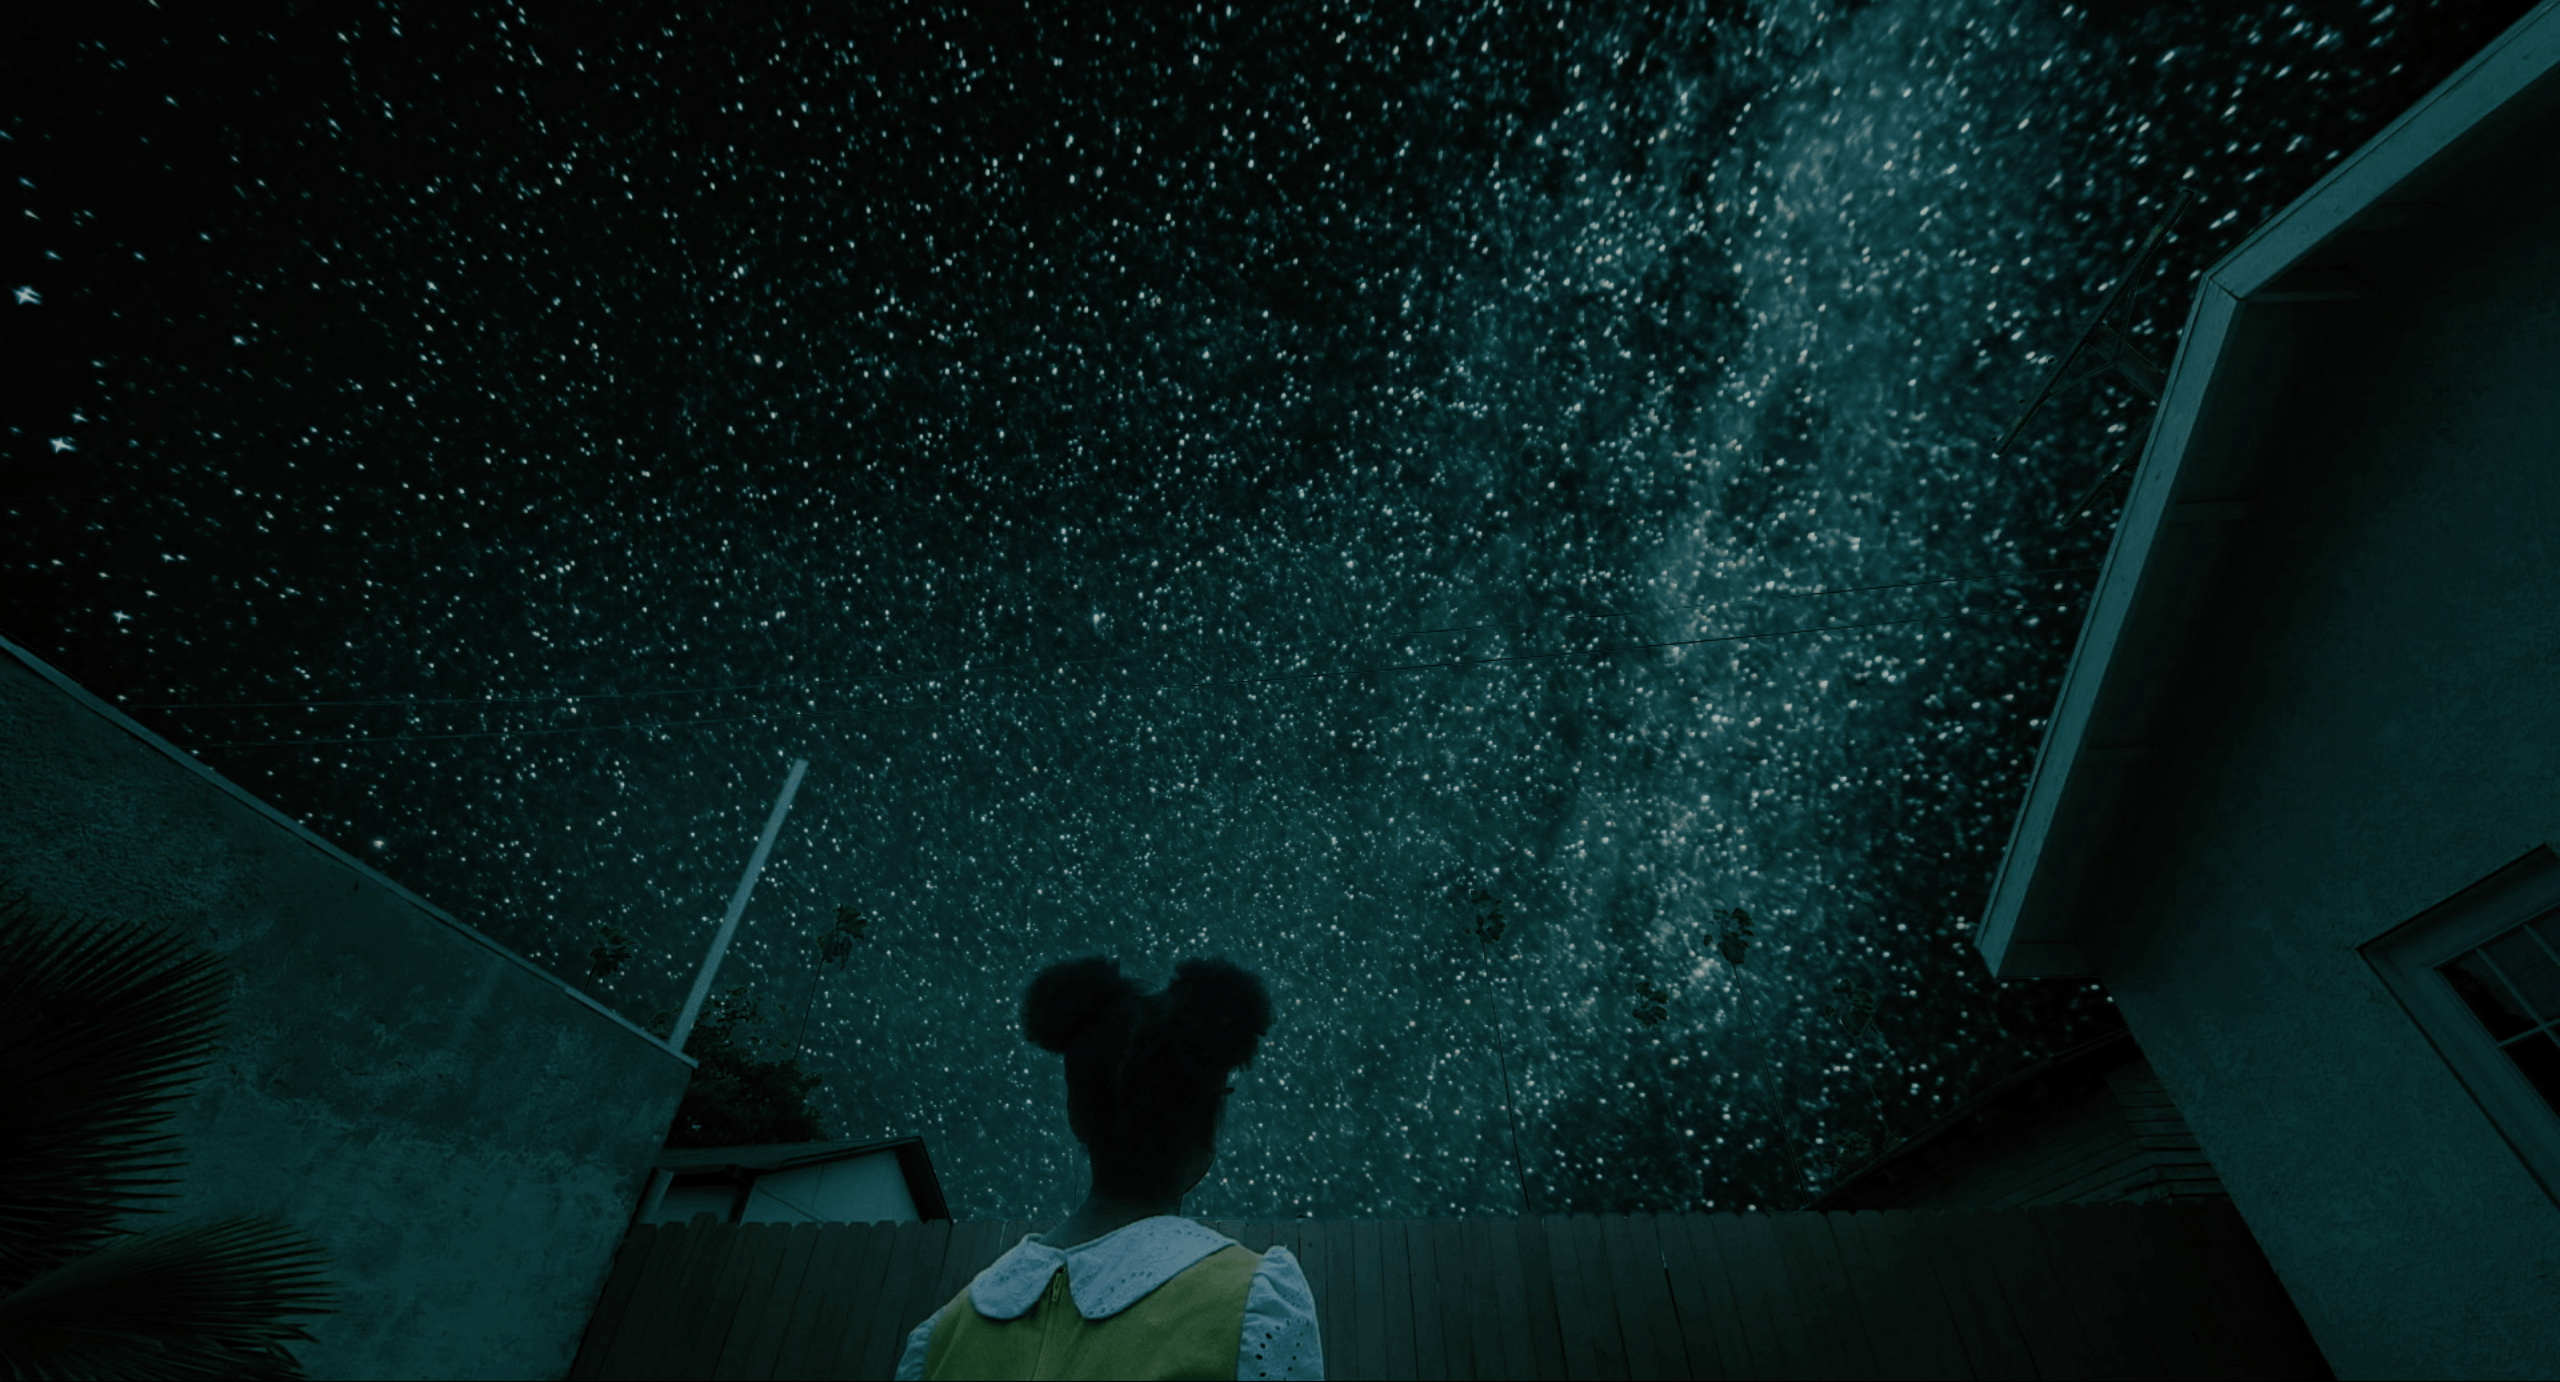 Leona and stars